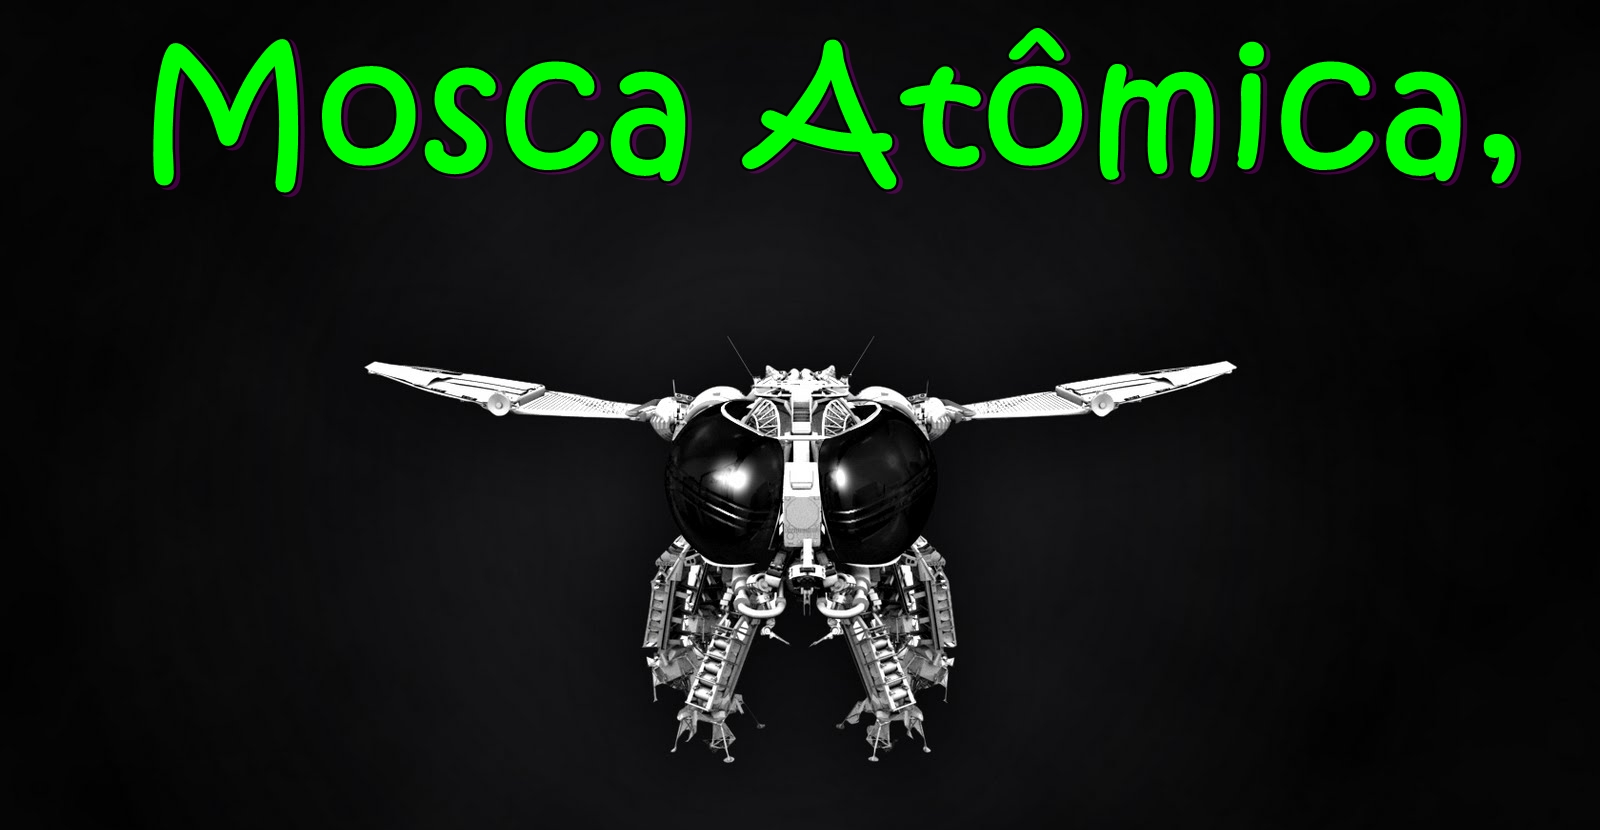 Mosca atômica